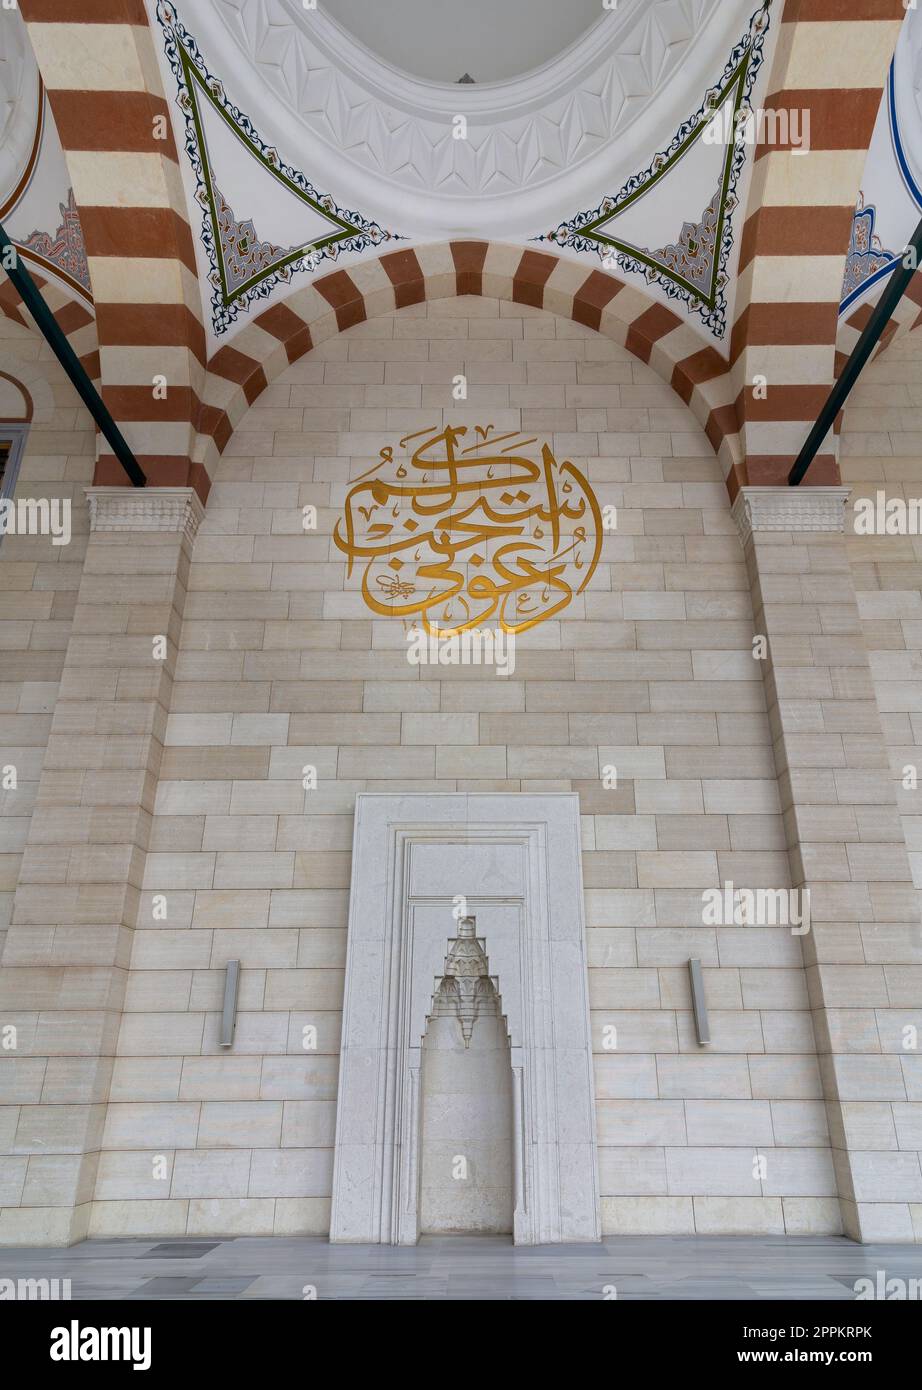 Architecture moderne conception de niches voûtées dans la cour de la mosquée Camlica, Istanbul, Turquie Banque D'Images